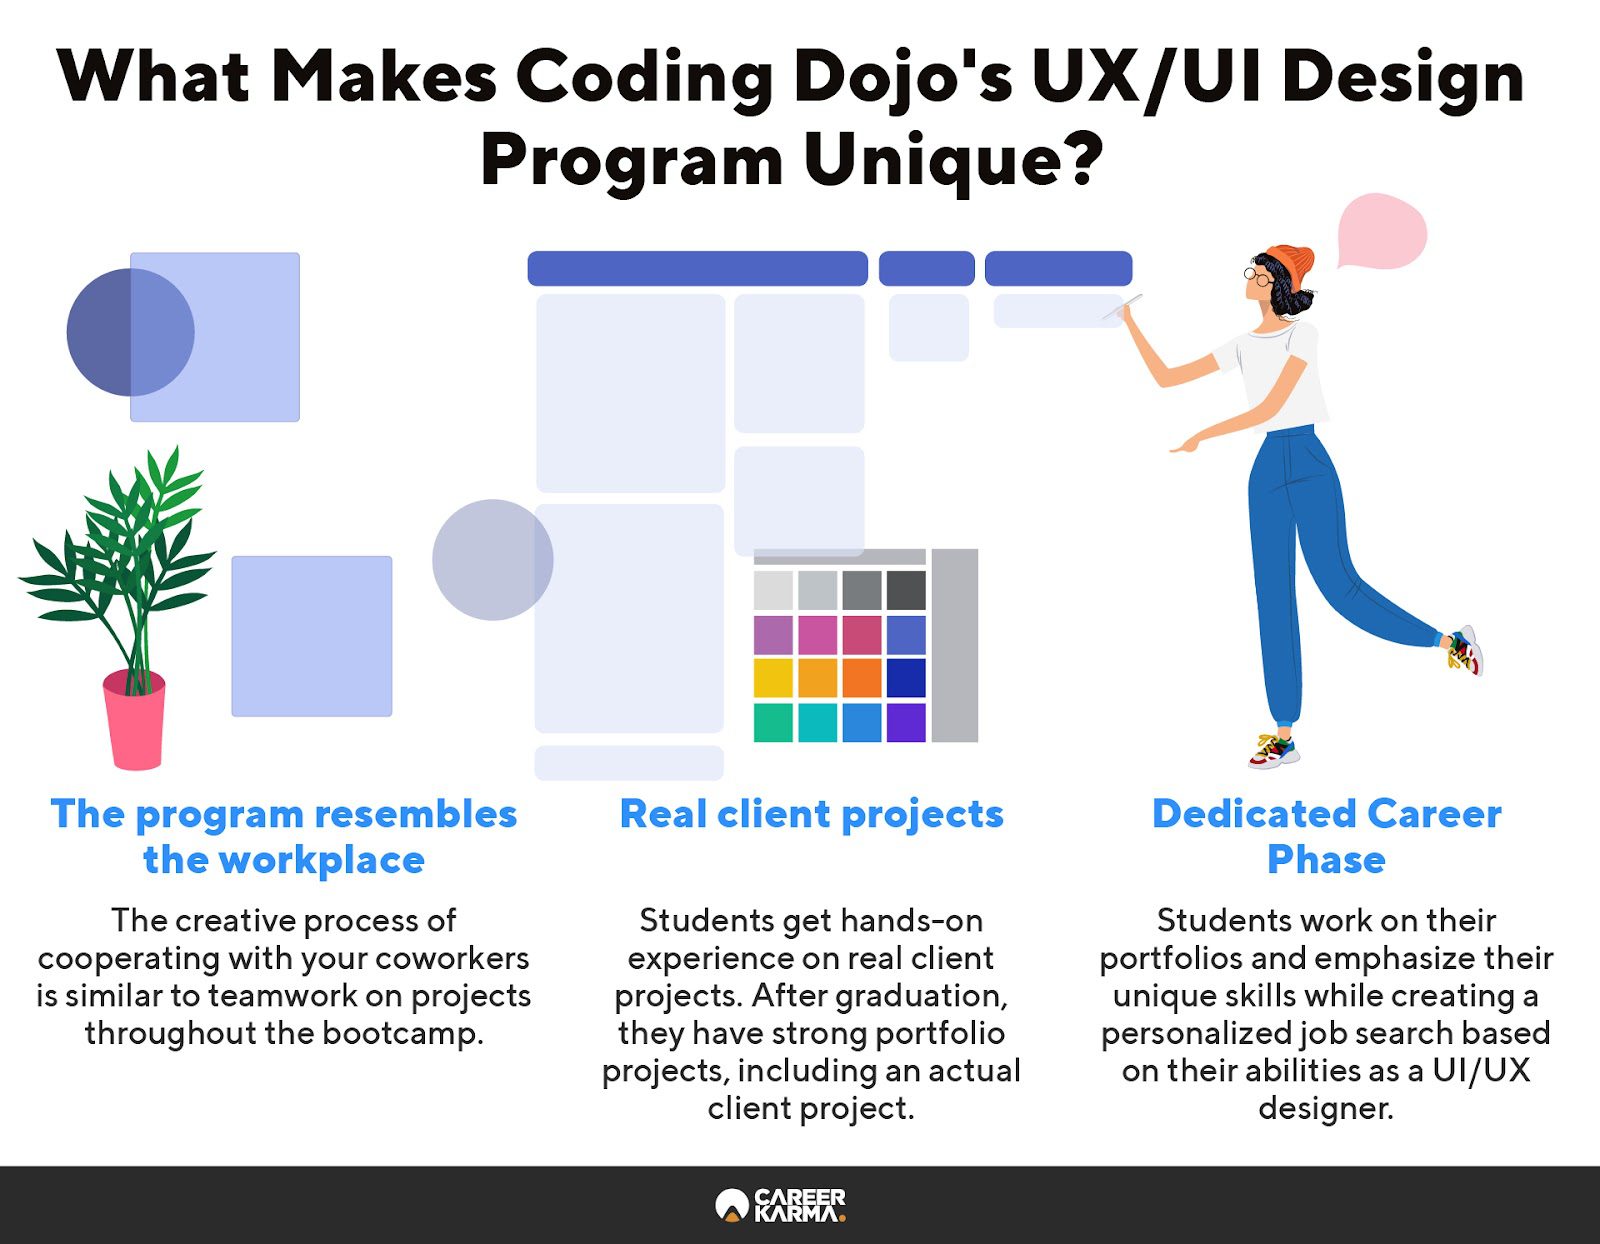 An infographic showing what makes Coding Dojo’s UX/UI Design program unique